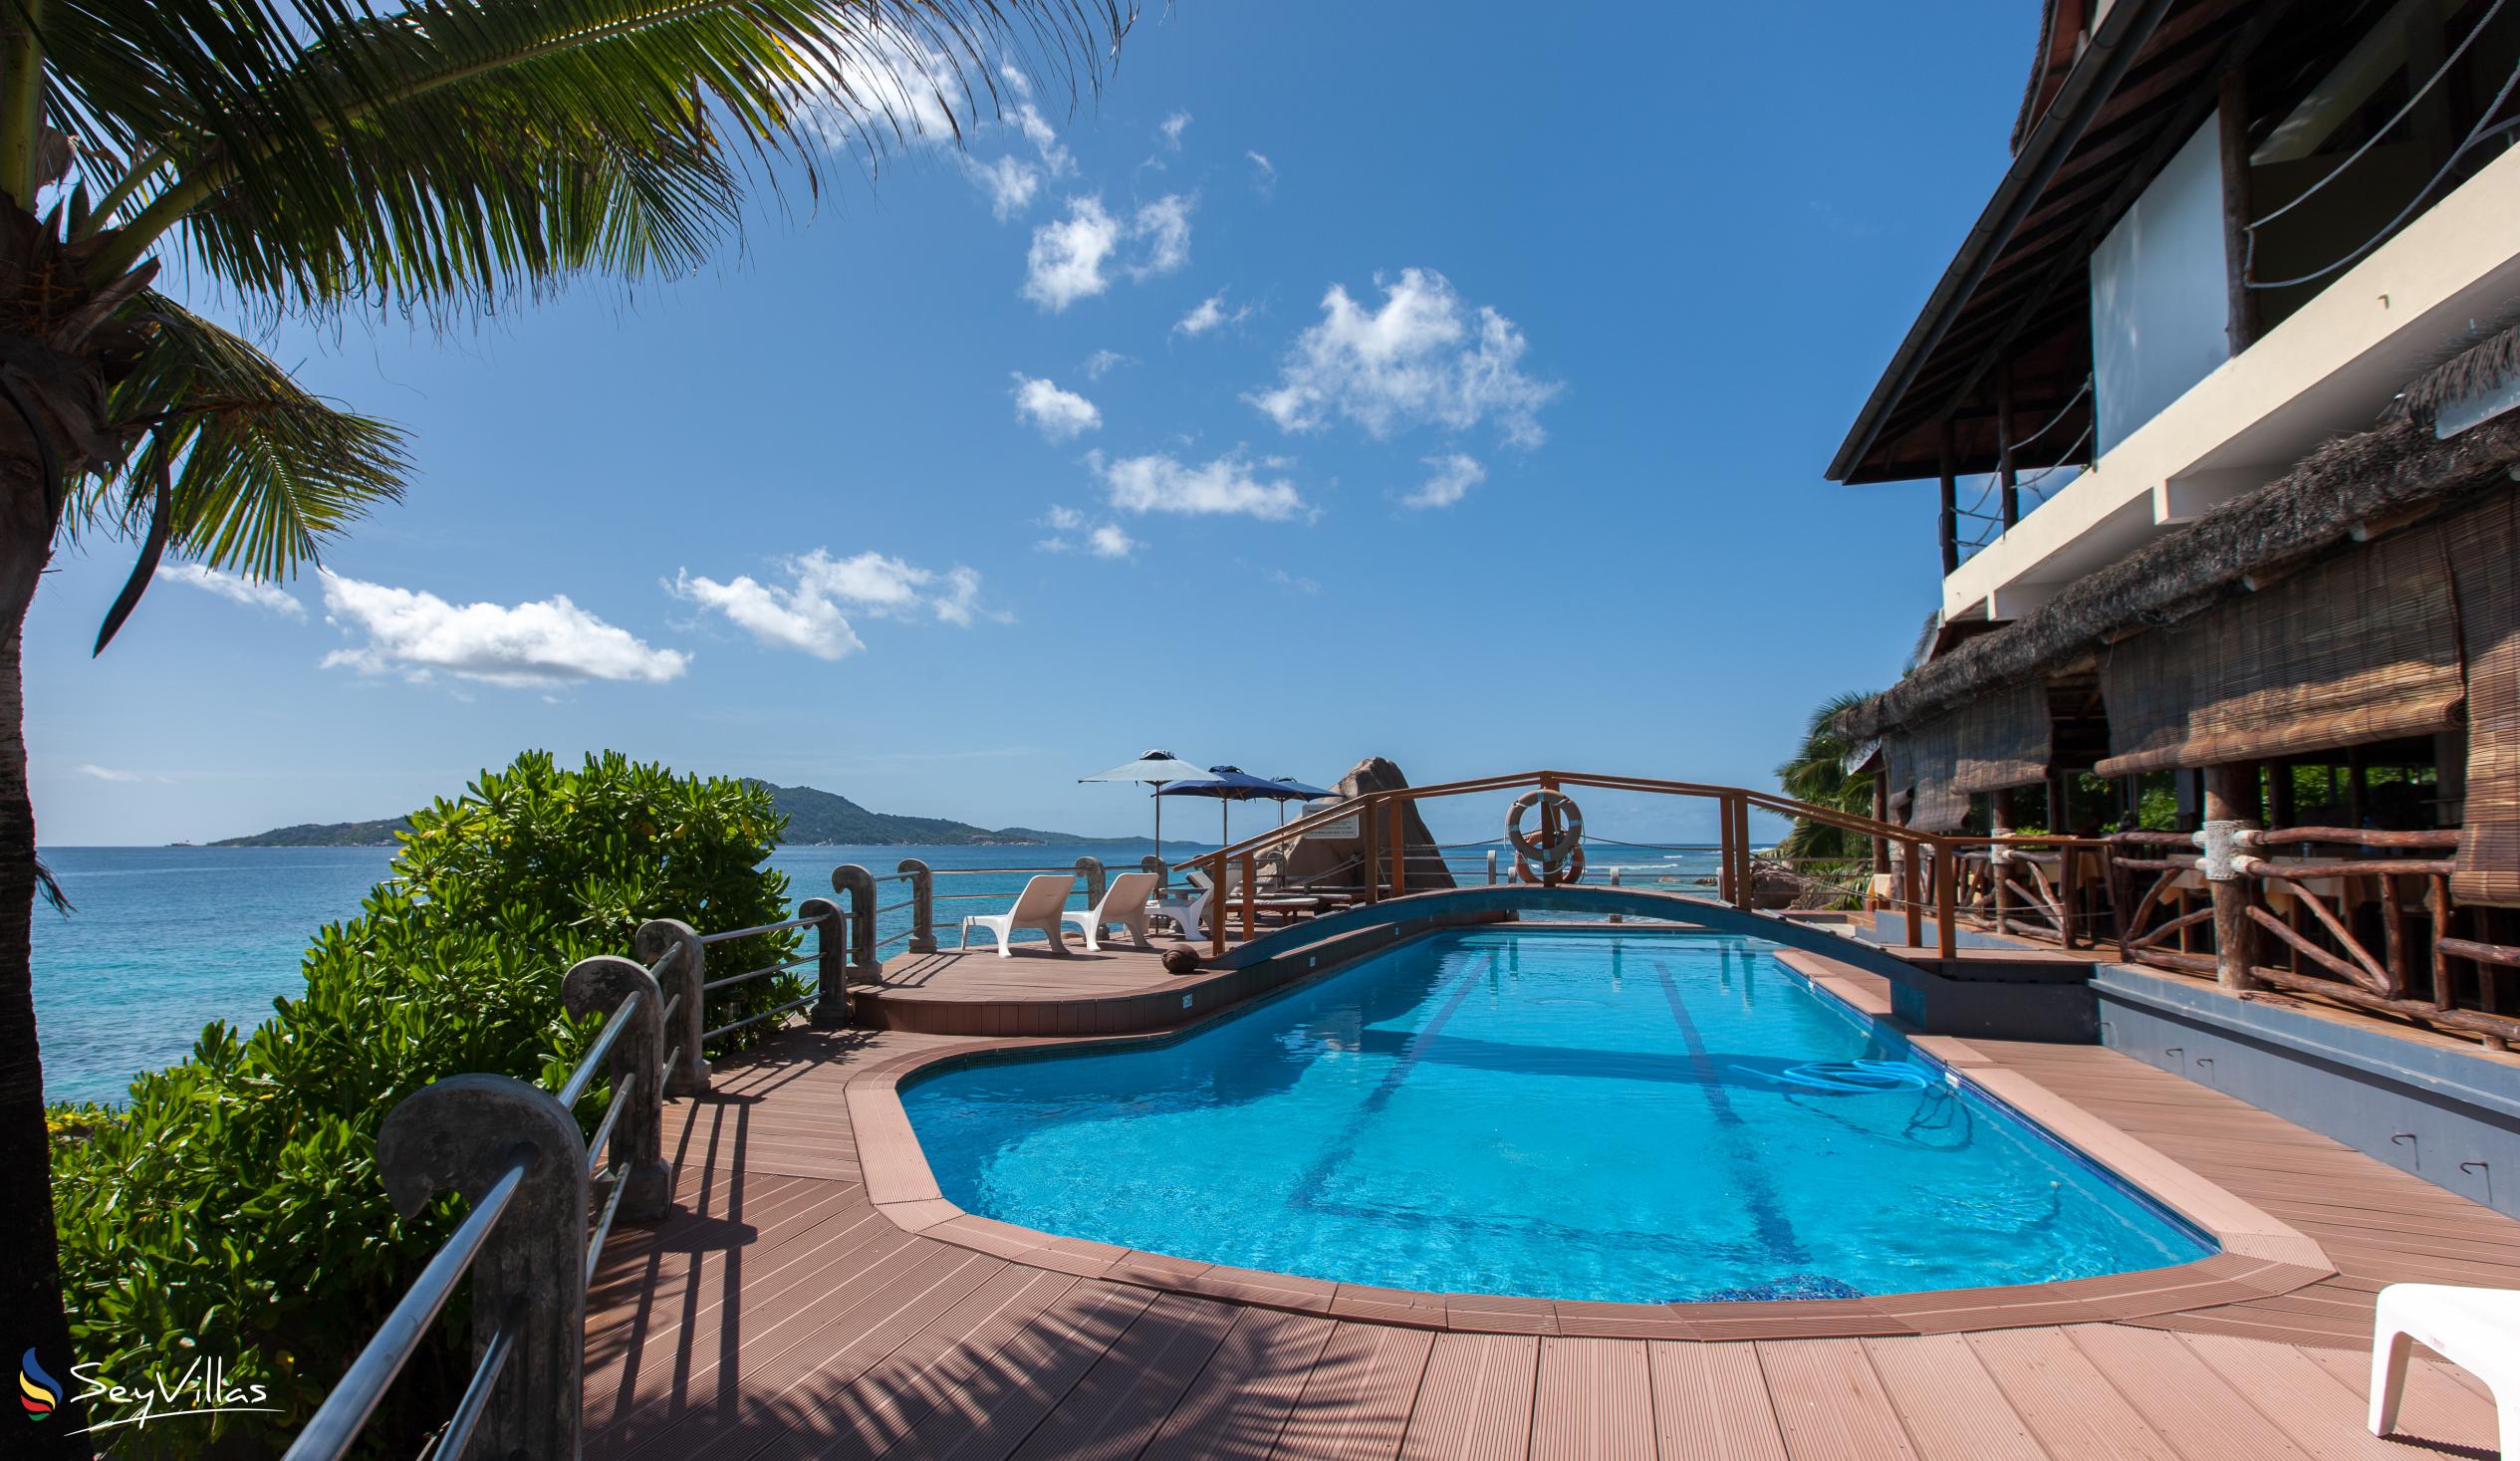 Foto 4: Patatran Village Hotel - Aussenbereich - La Digue (Seychellen)